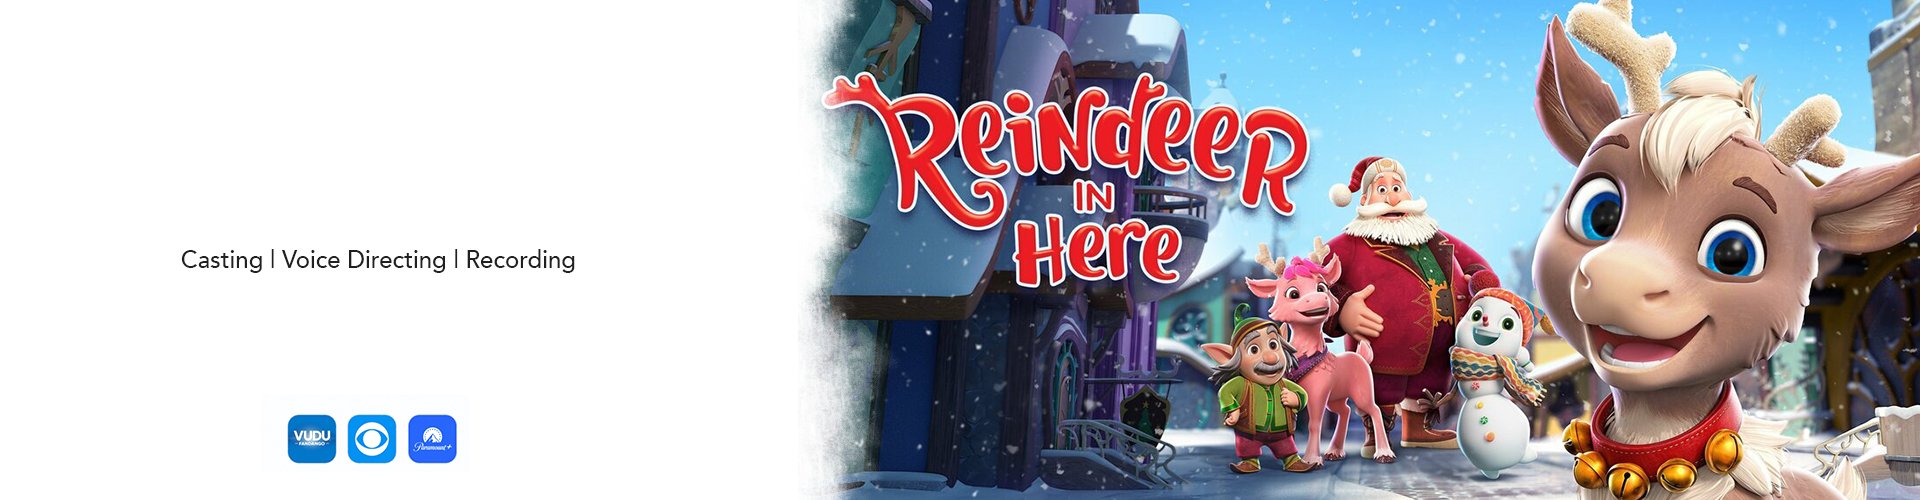 1__Reindeer-in-Here_banner.jpg